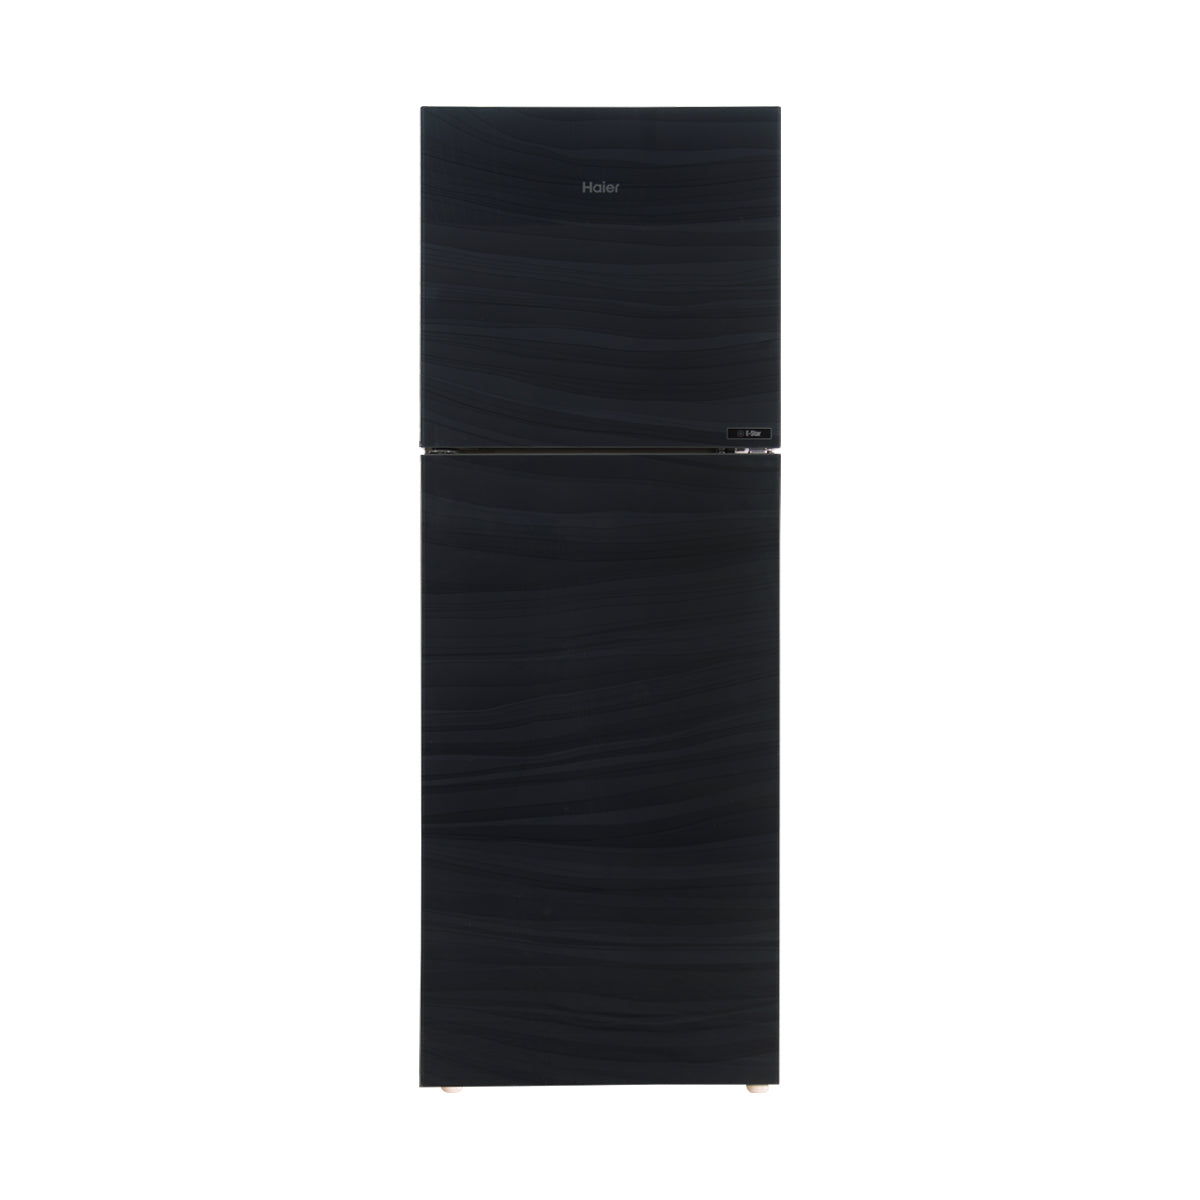 Haier Refrigerator Double Door - HRF-246 EPR/EPB/EPC (Glass Door)